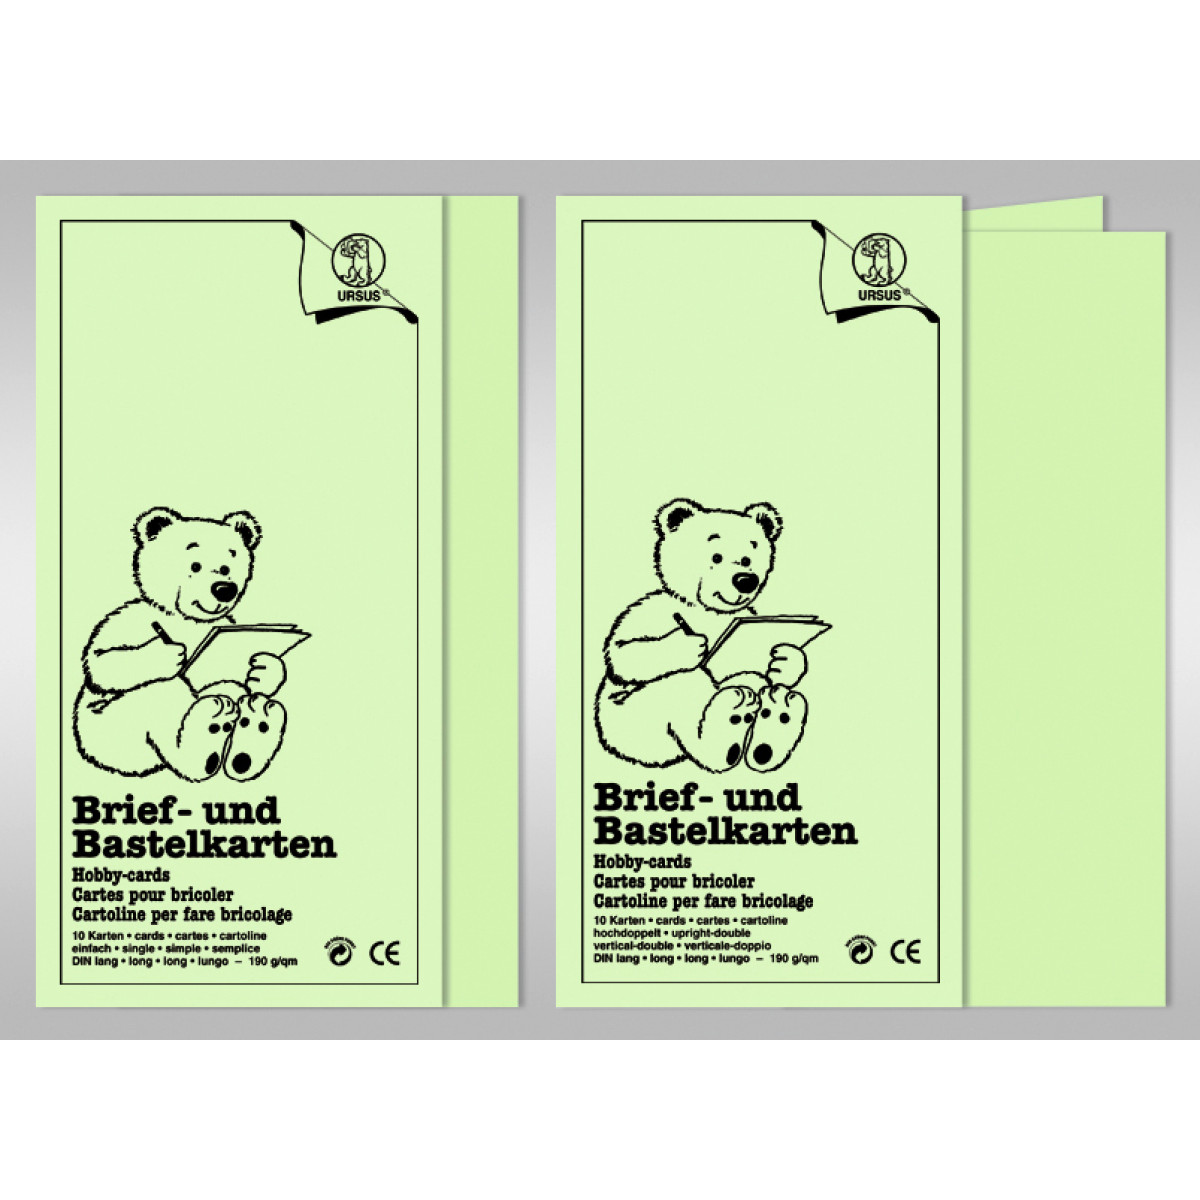 Brief- und Bastelkarten DIN A6 hochdoppelt - 10 Karten